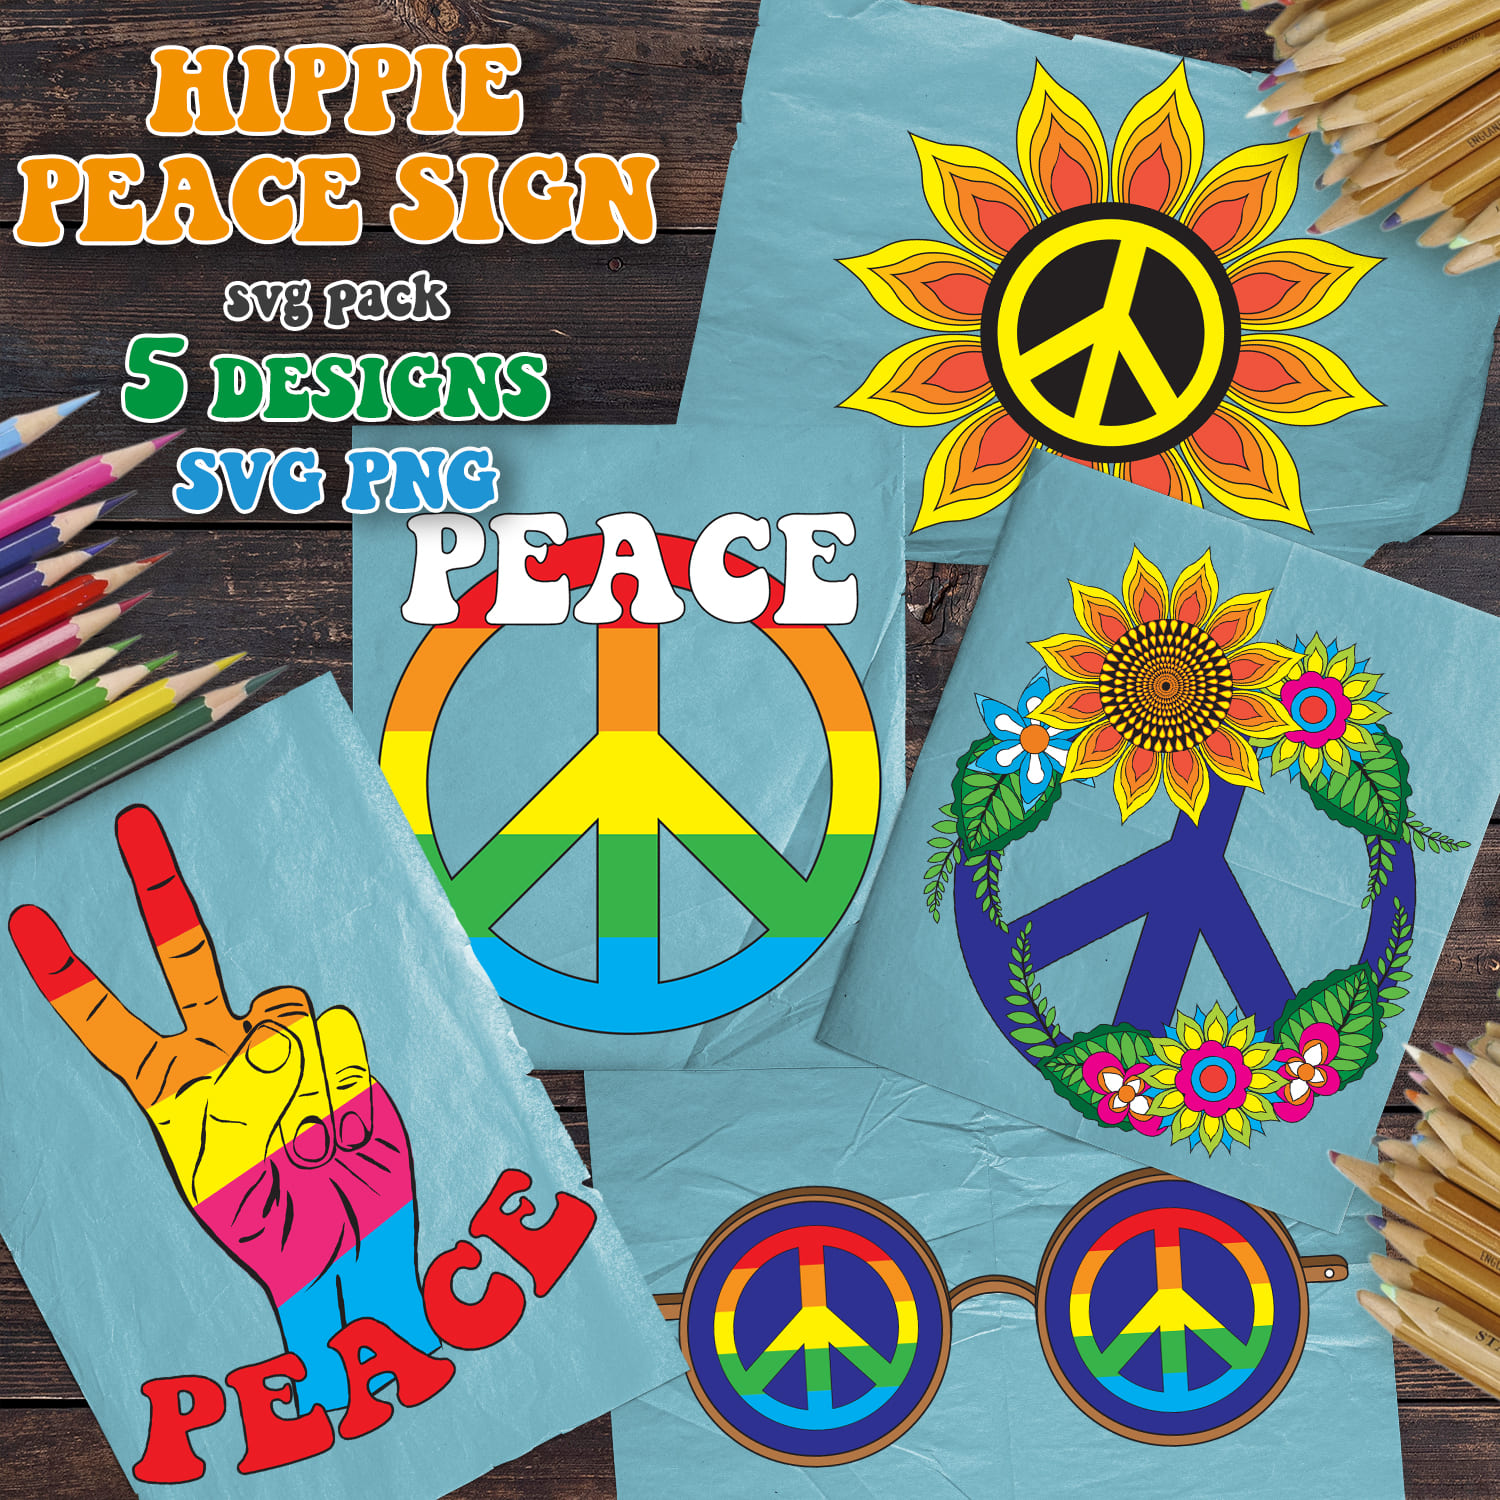 Hippie Peace Sign SVG T-shirt Designs Bundle - main image preview.